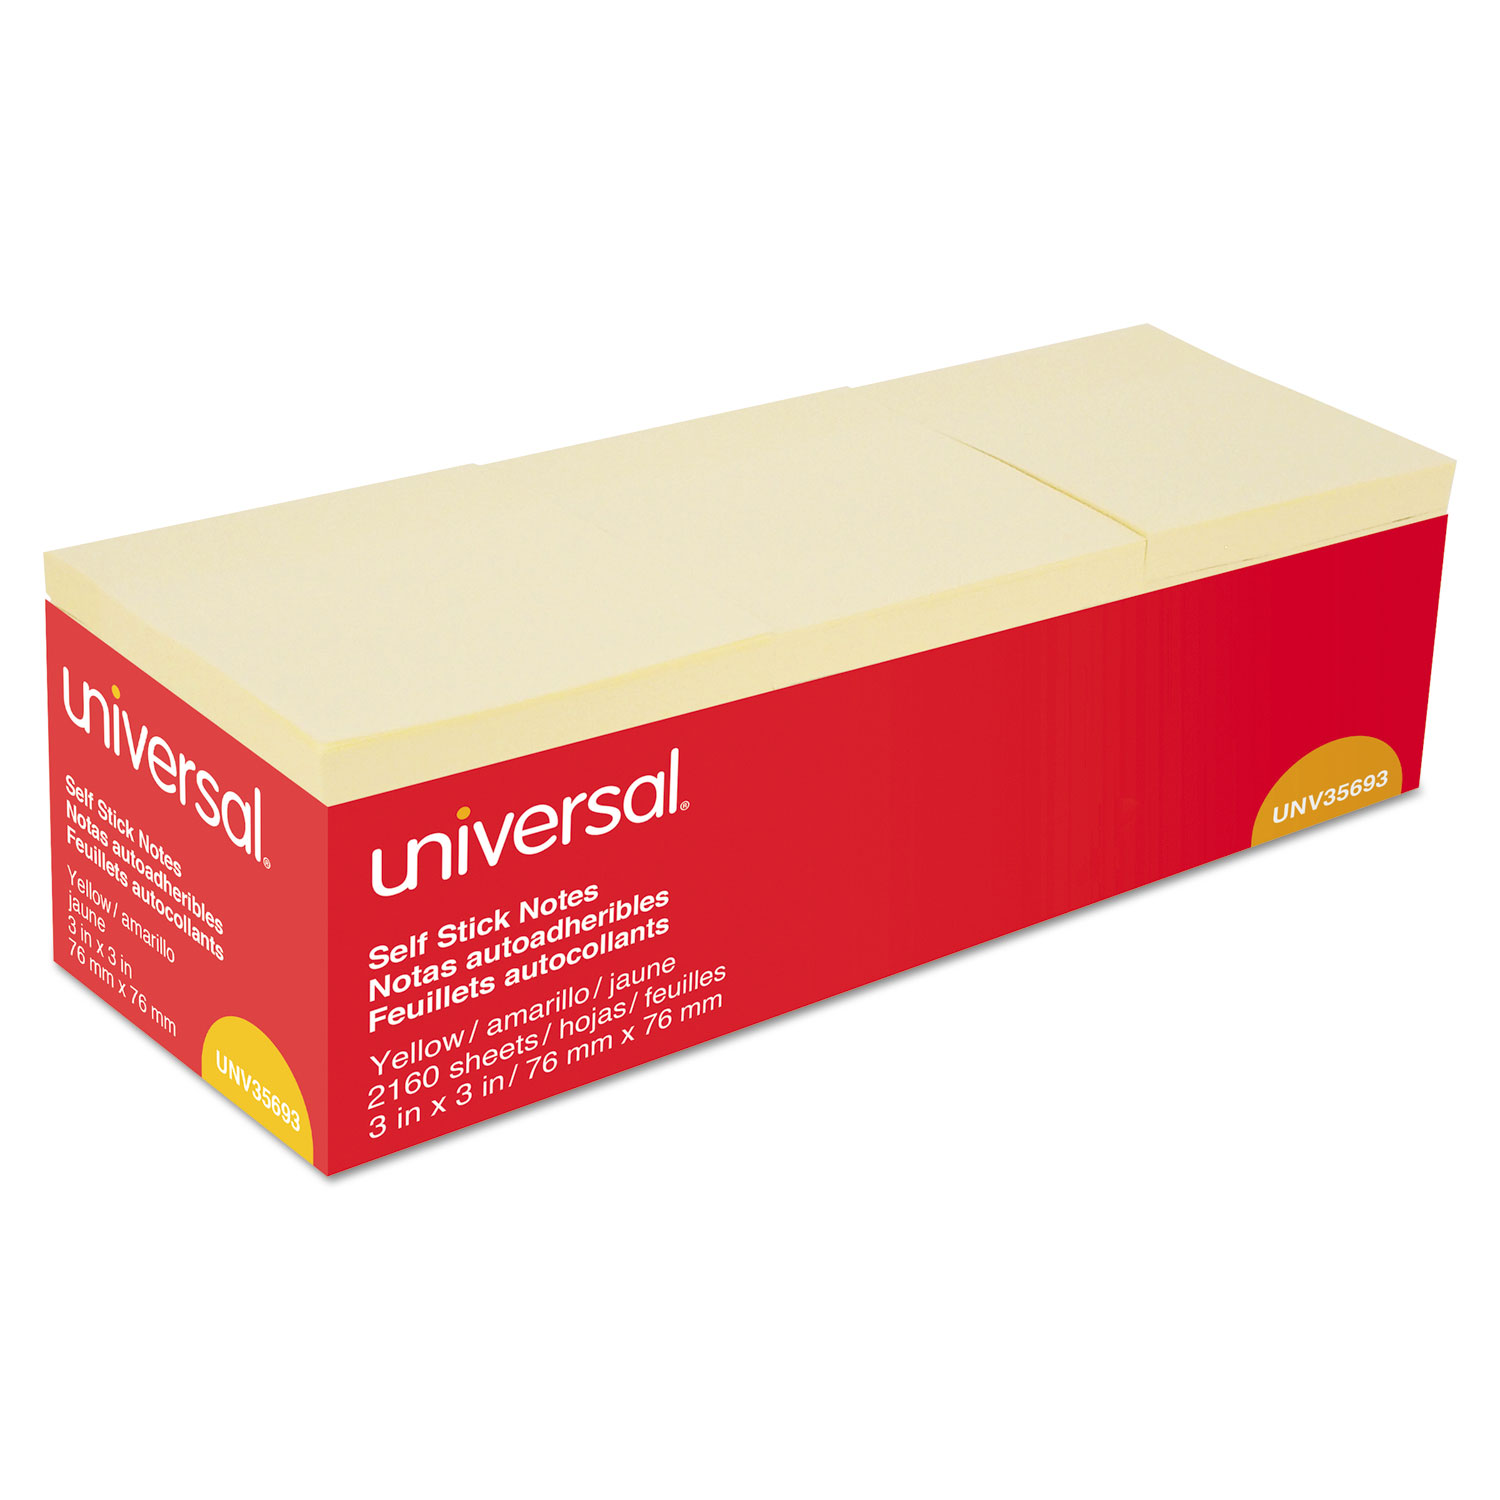  Universal UNV35693 Self-Stick Note Pads, 3 x 3, Yellow, 90-Sheet, 24/Pack (UNV35693) 